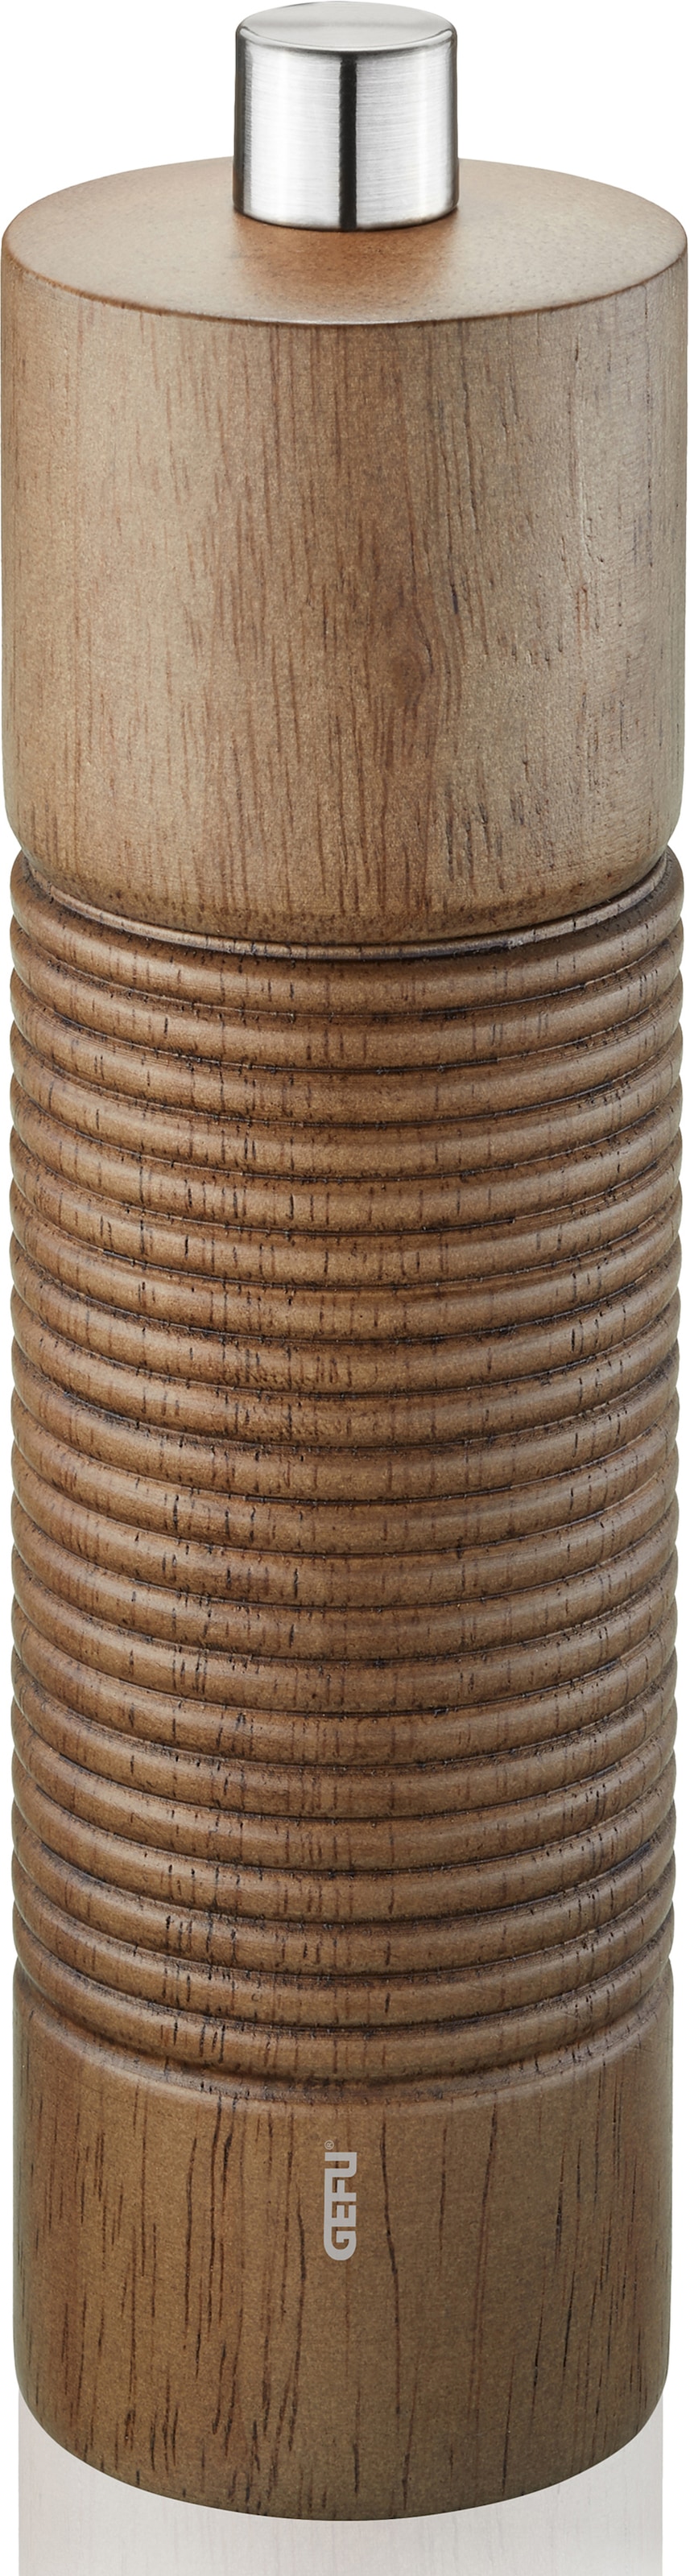 GEFU Salz-/Pfeffermühle »TEDORO«, stufenlos einstellbares Keramikmahlwerk